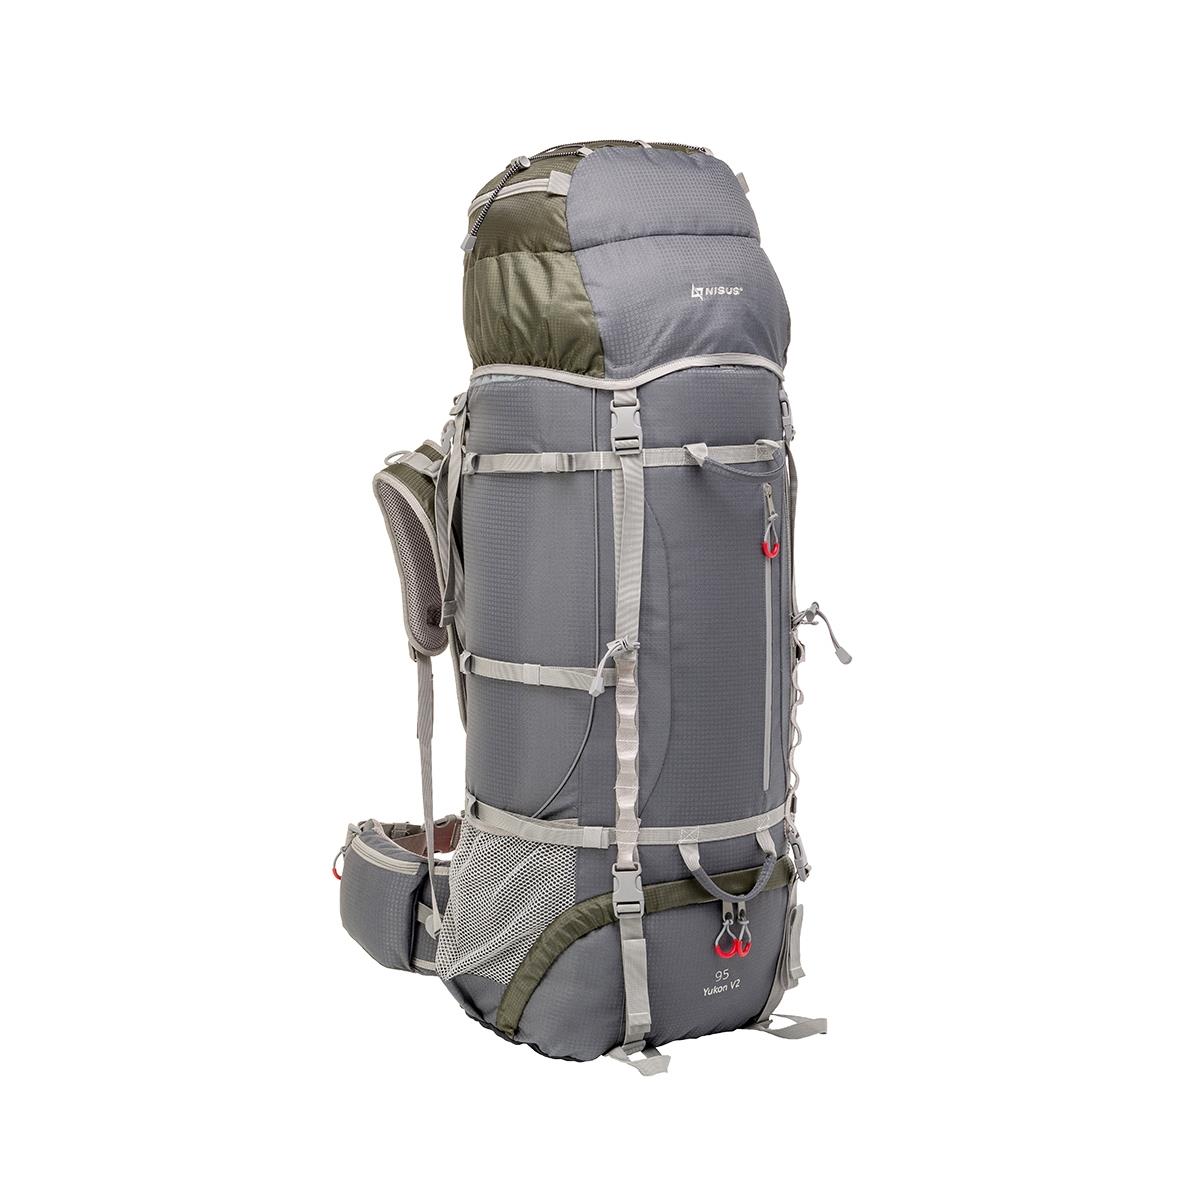 Рюкзак Юкон 95 Nisus рюкзак текстильный со шнуровкой серый